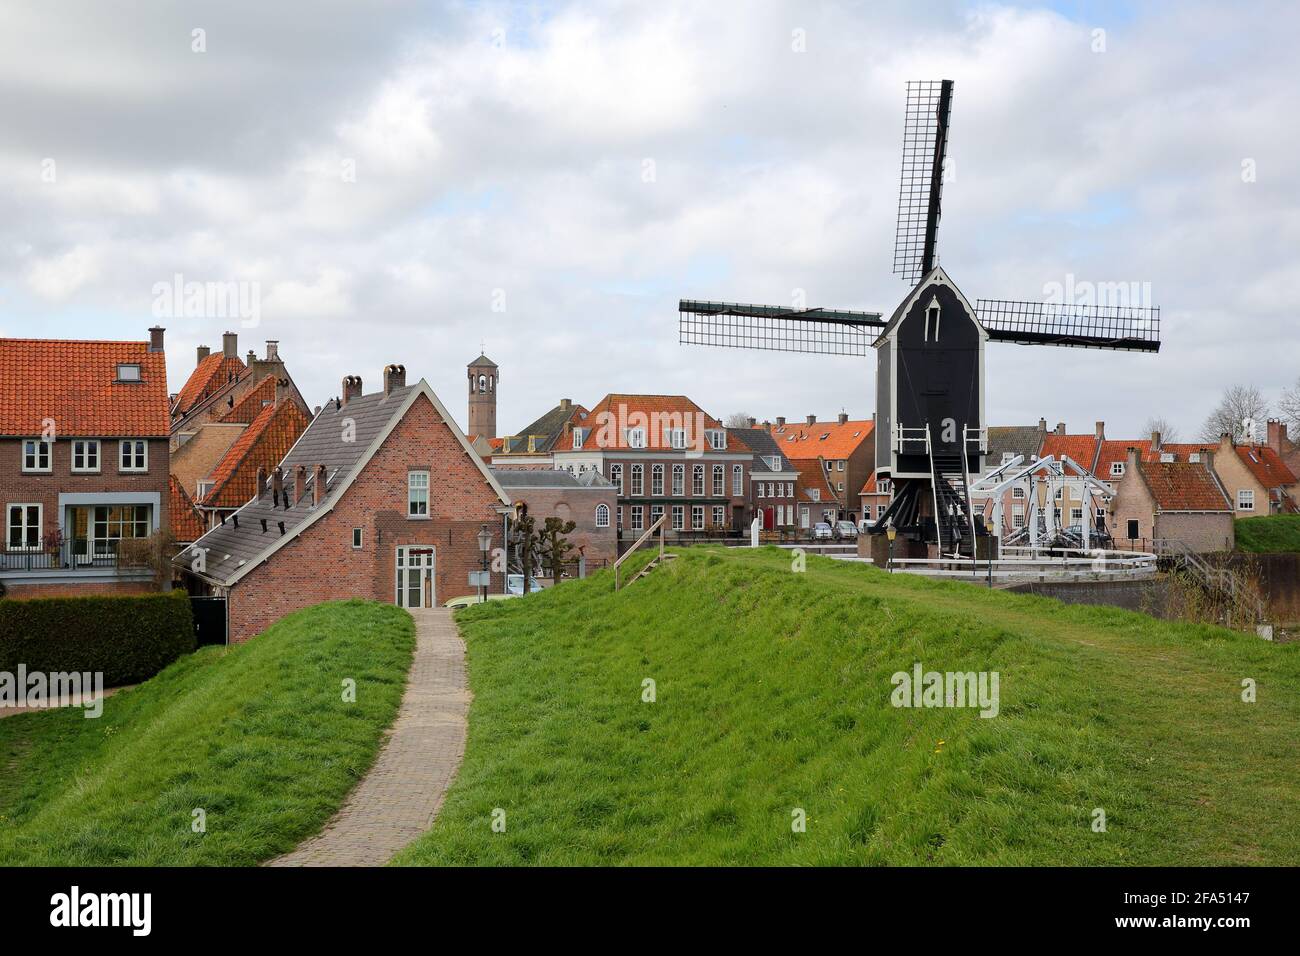 Der alte Hafen von Heusden, Nordbrabant, Niederlande, eine befestigte Stadt, 19 km von Hertogenbosch entfernt, mit einer Windmühle im Vordergrund Stockfoto